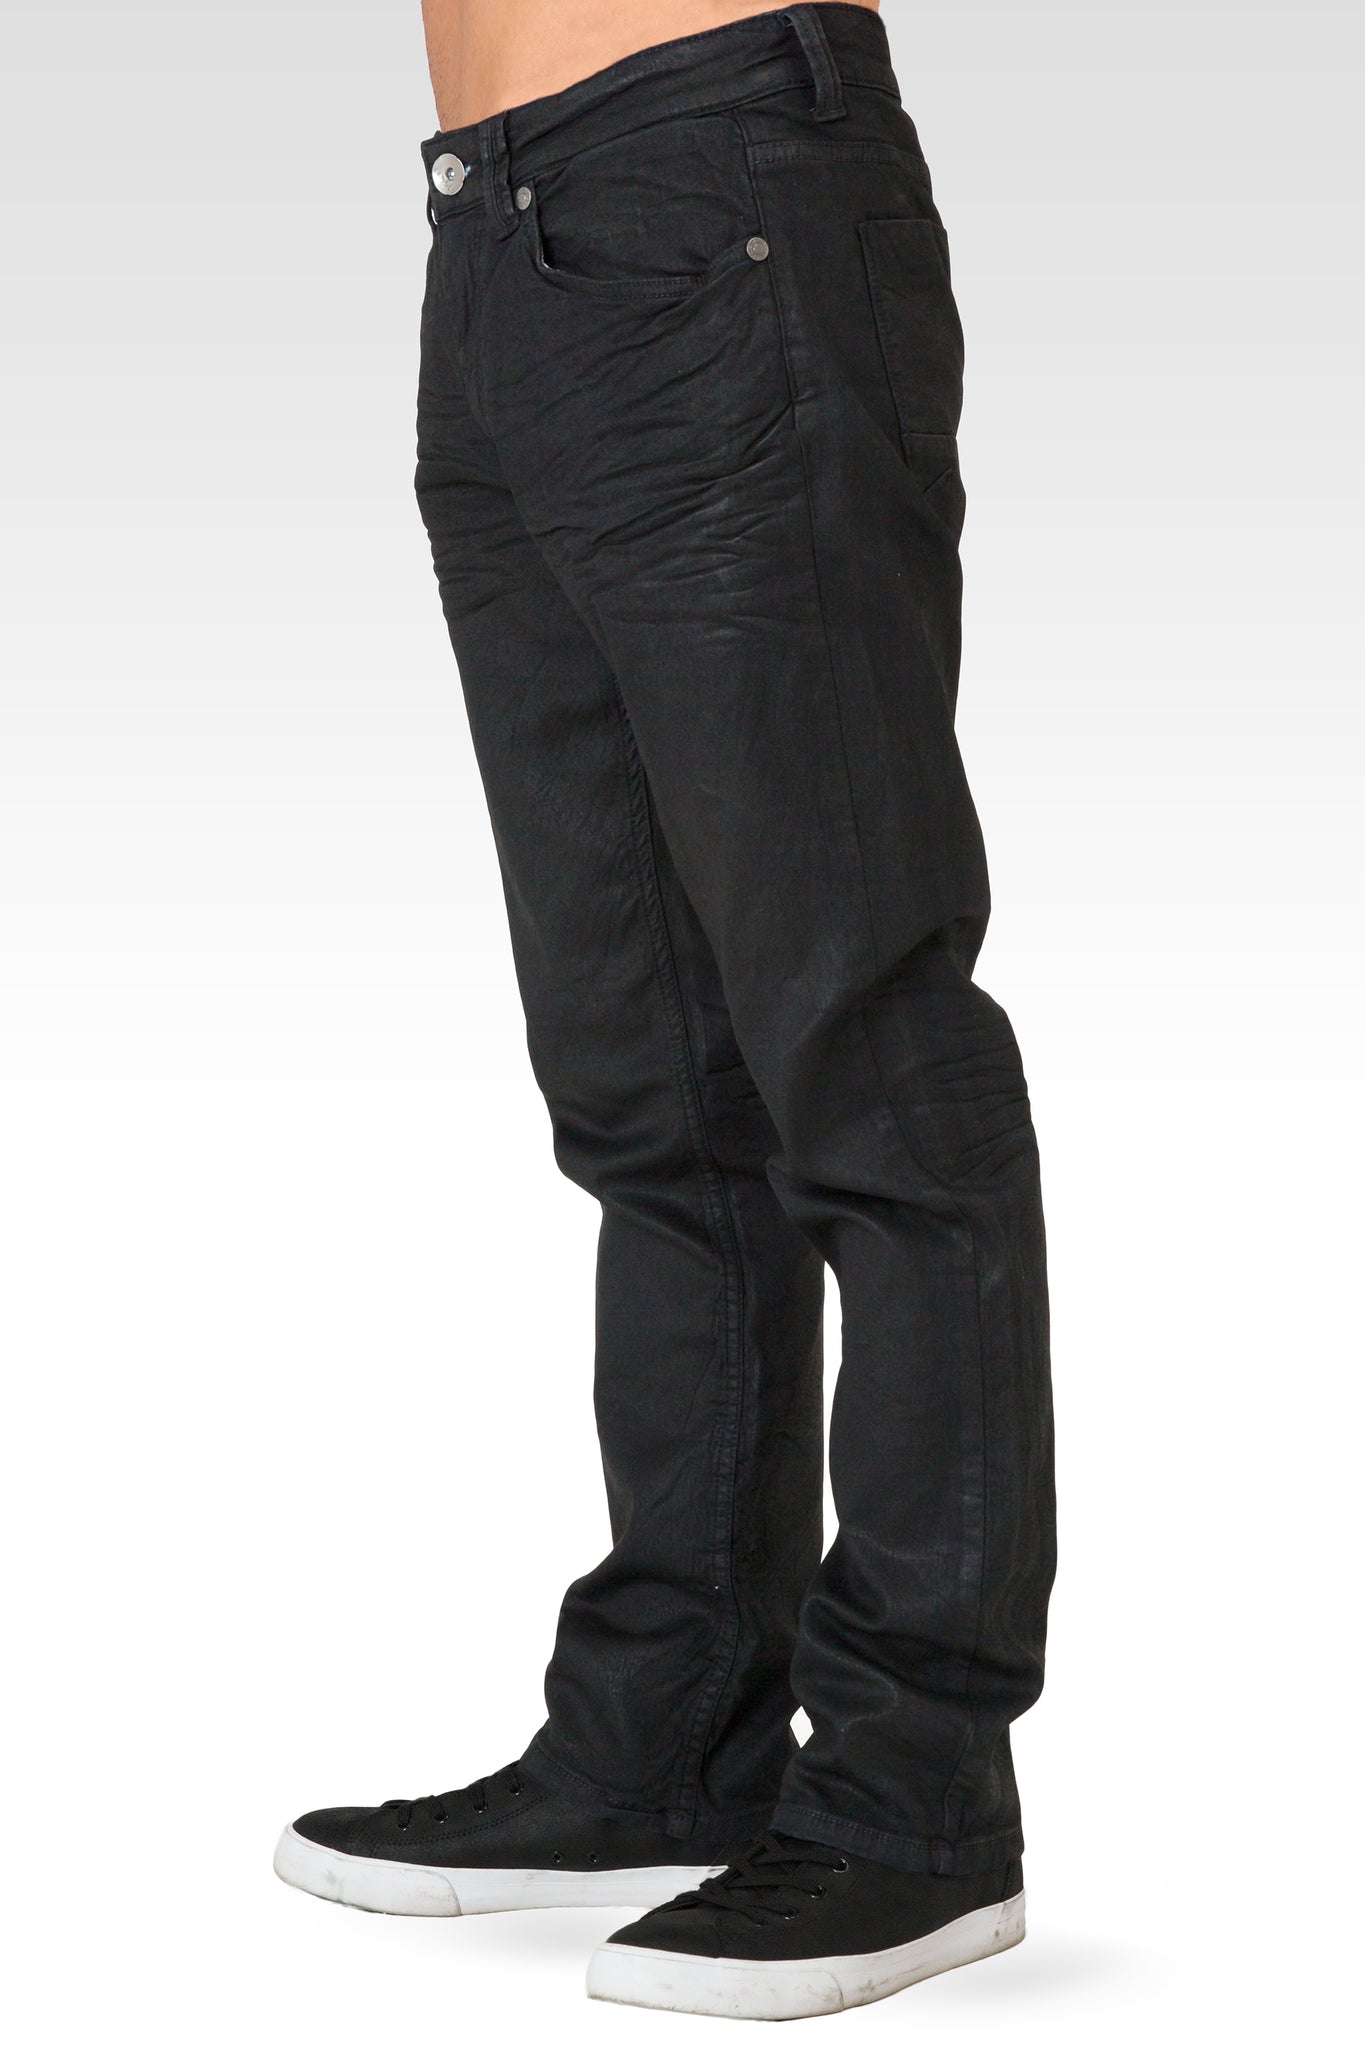 Dark Indigo Premium Coated 3D Whiskering Wash 5 Pkt Knit Denim Jeans